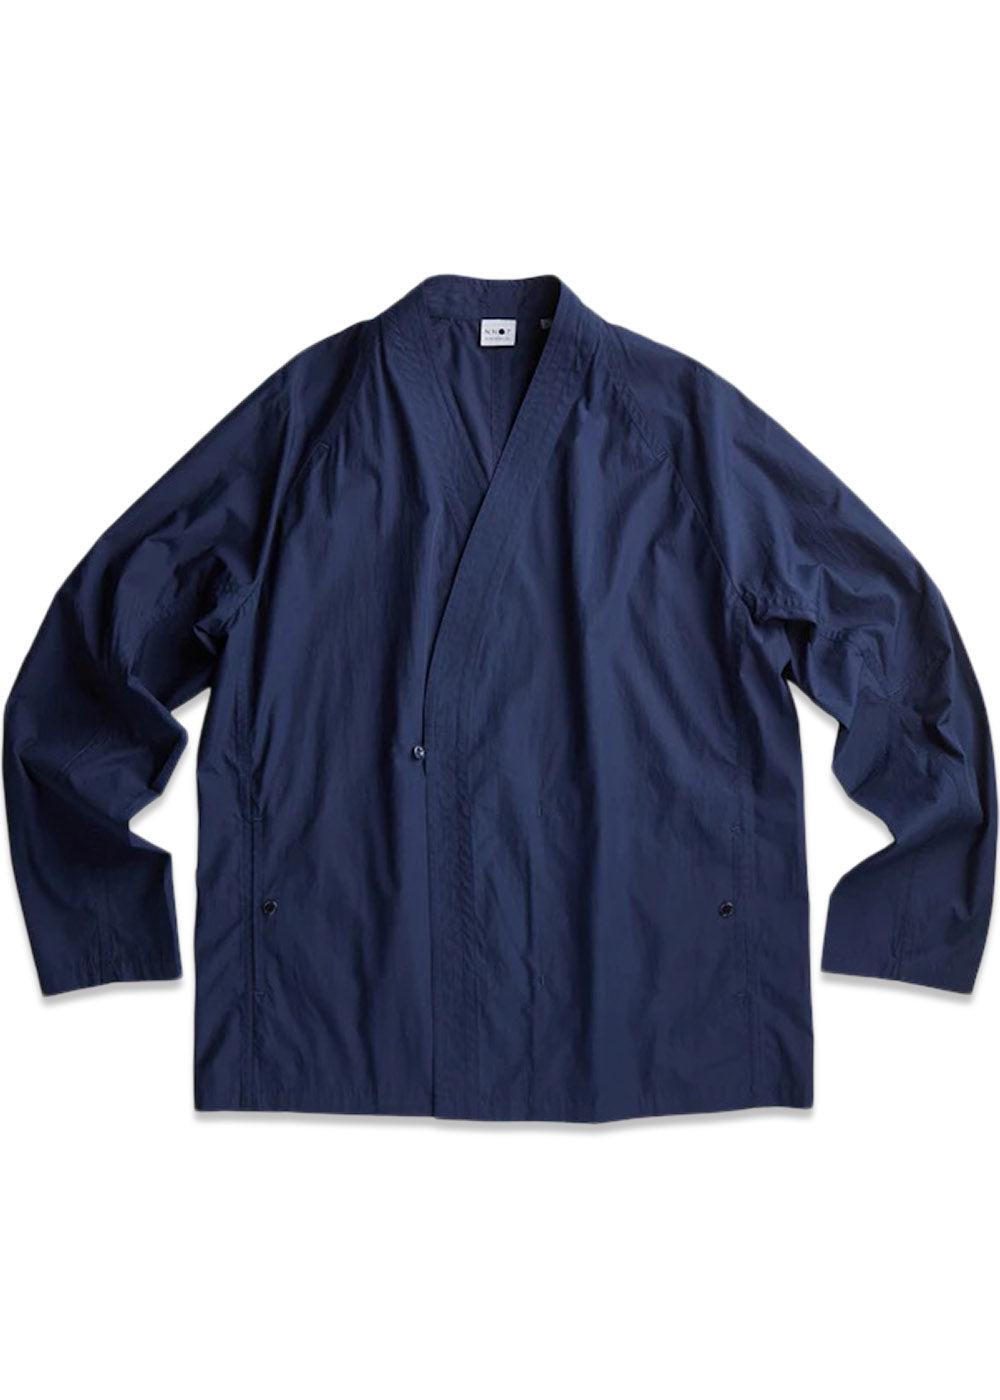 Nn. 07s Kotaro 1062 - Navy Blue. Køb shirts her.